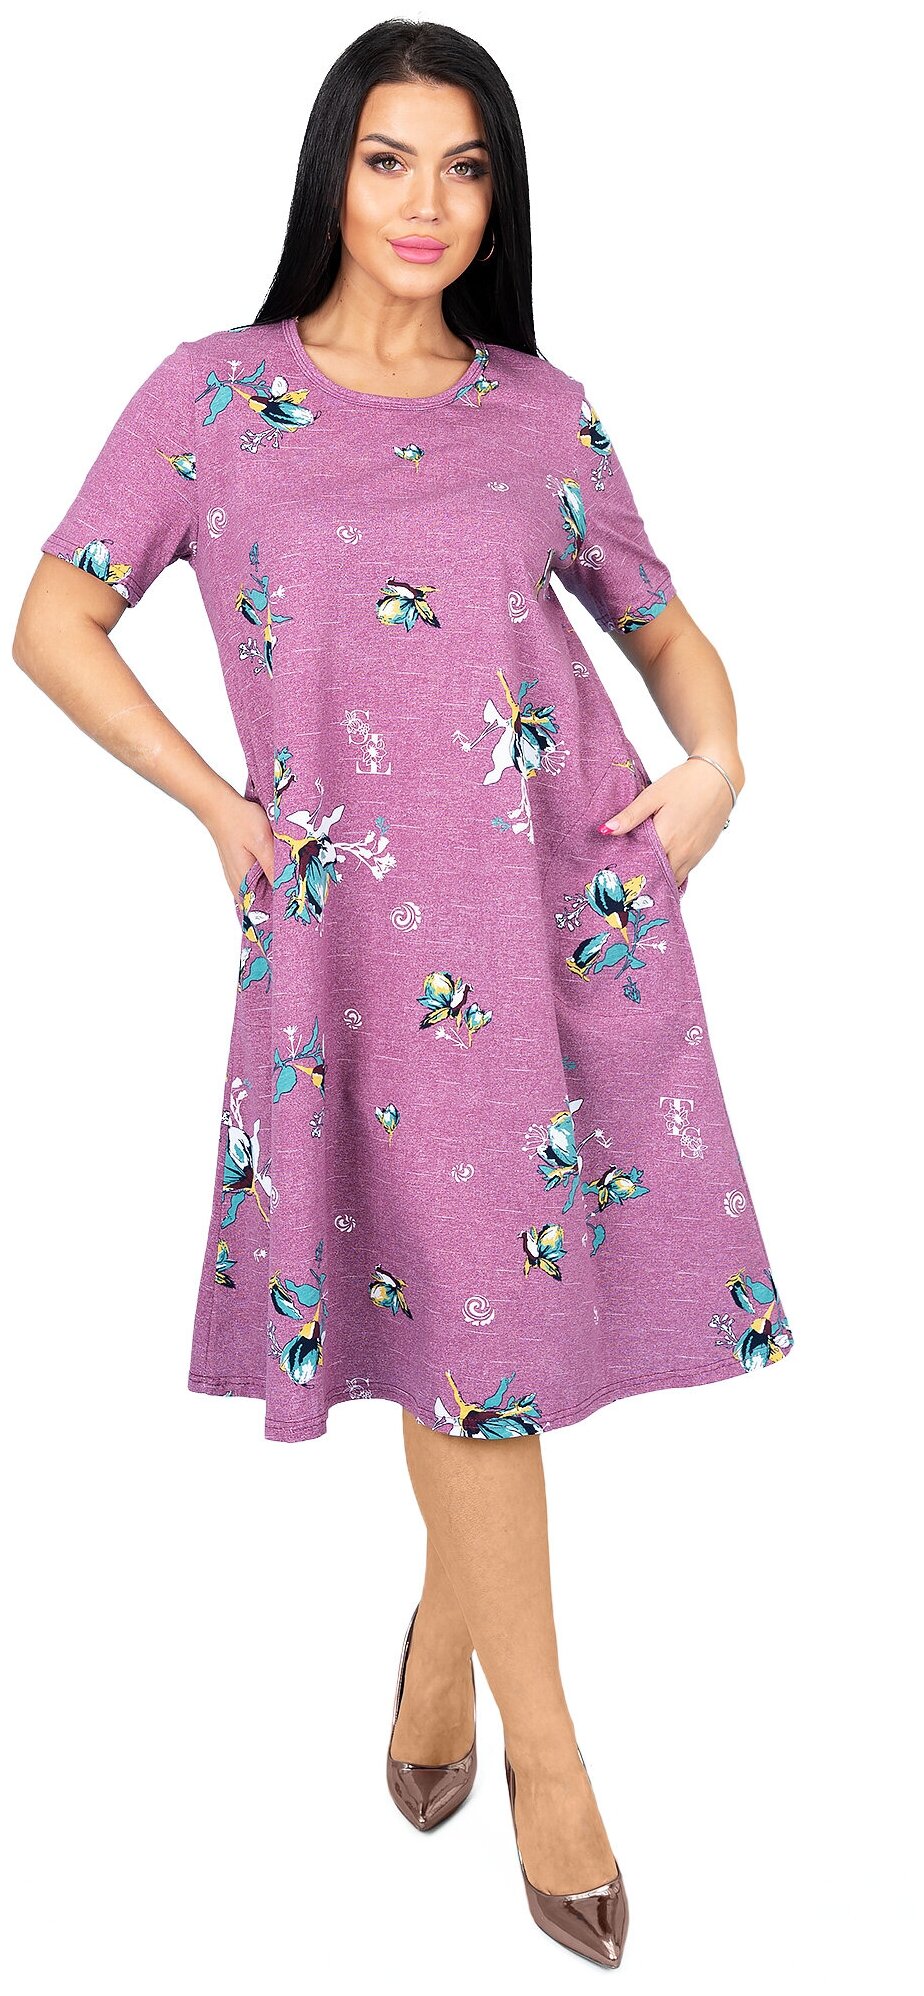 Платье Трикотажные сезоны, размер 48, фиолетовый — купить в интернет-магазине по низкой цене на Яндекс Маркете